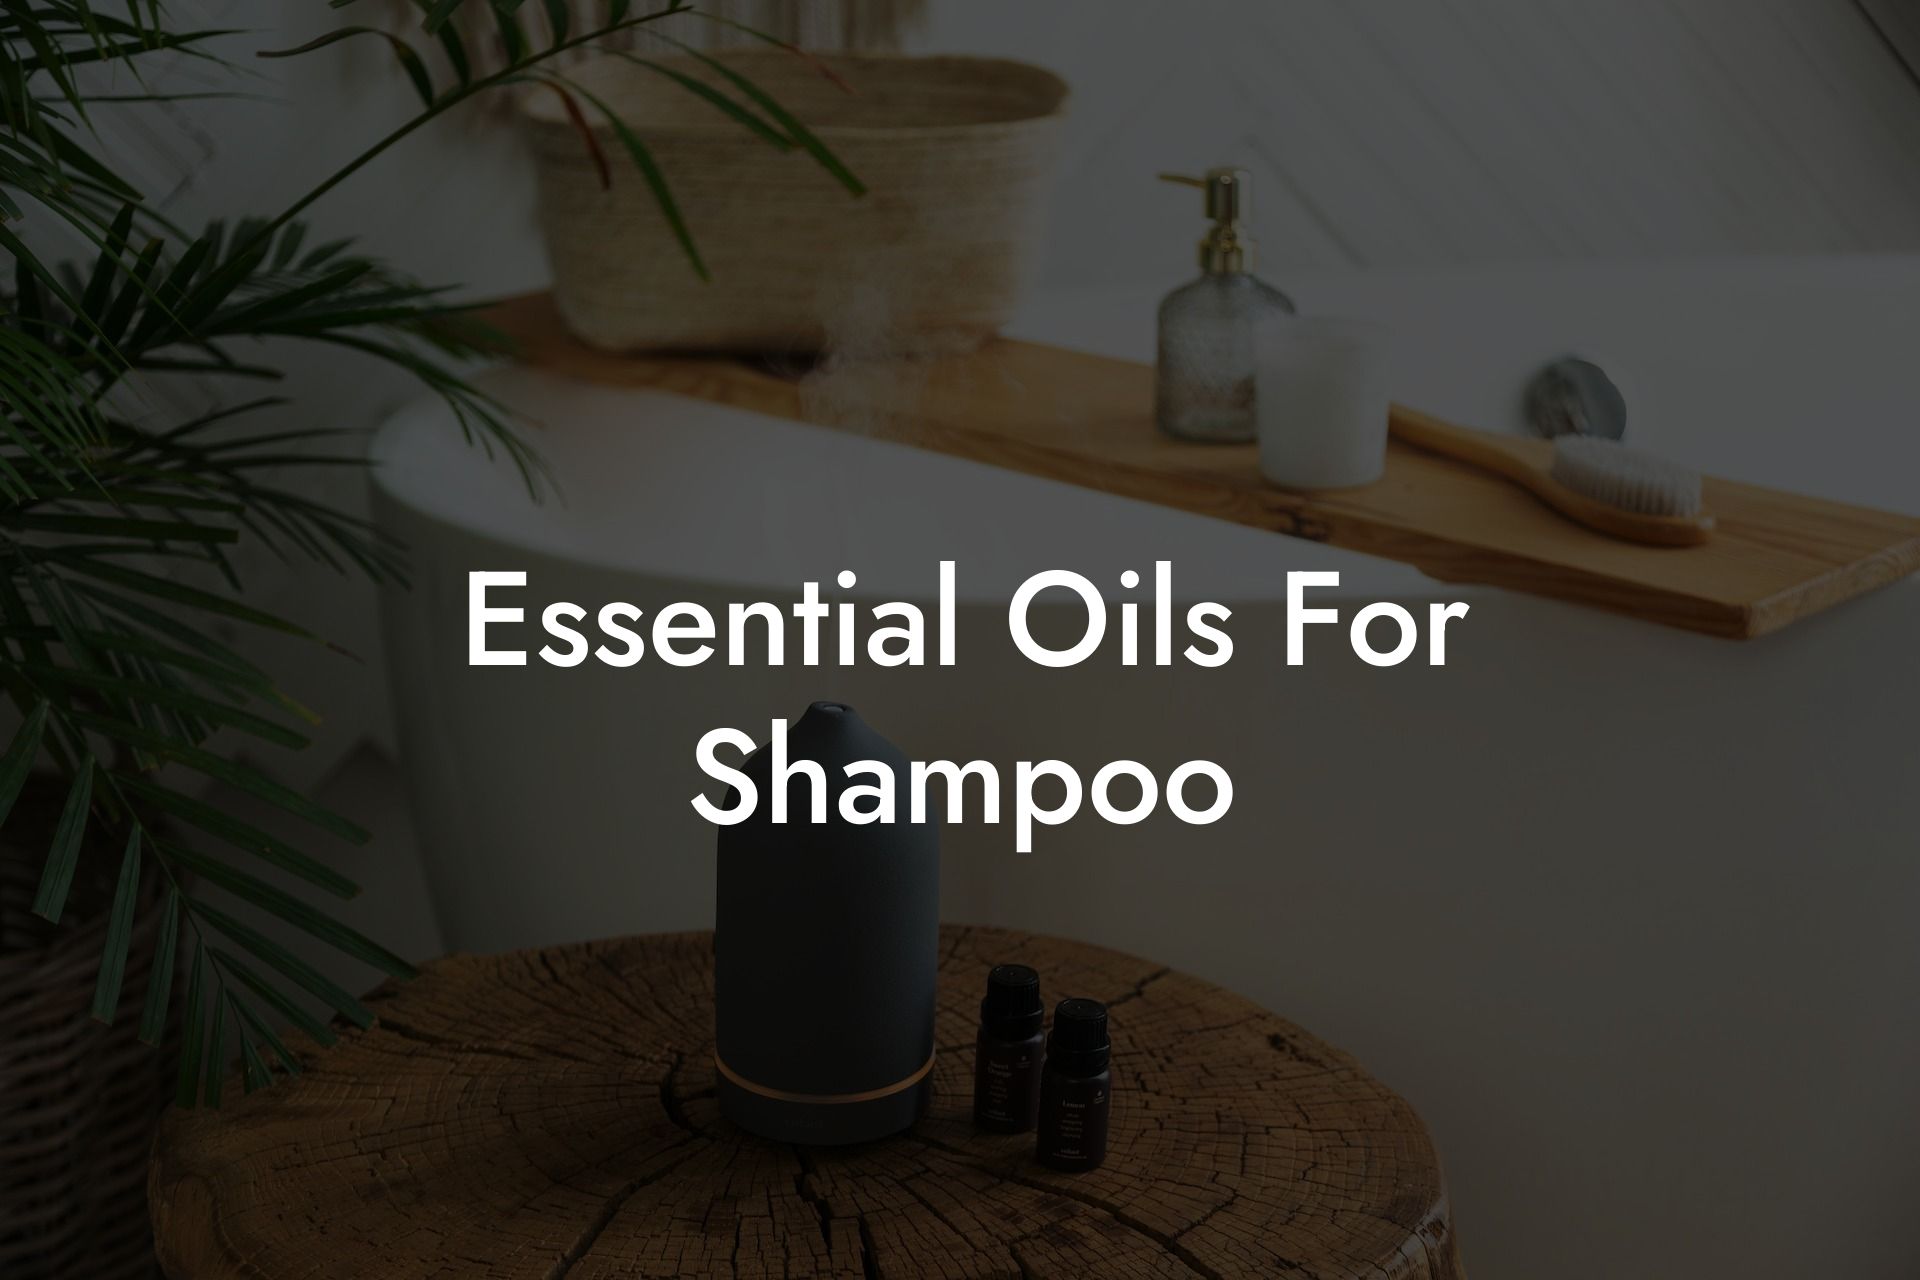 Essential Oils For Shampoo